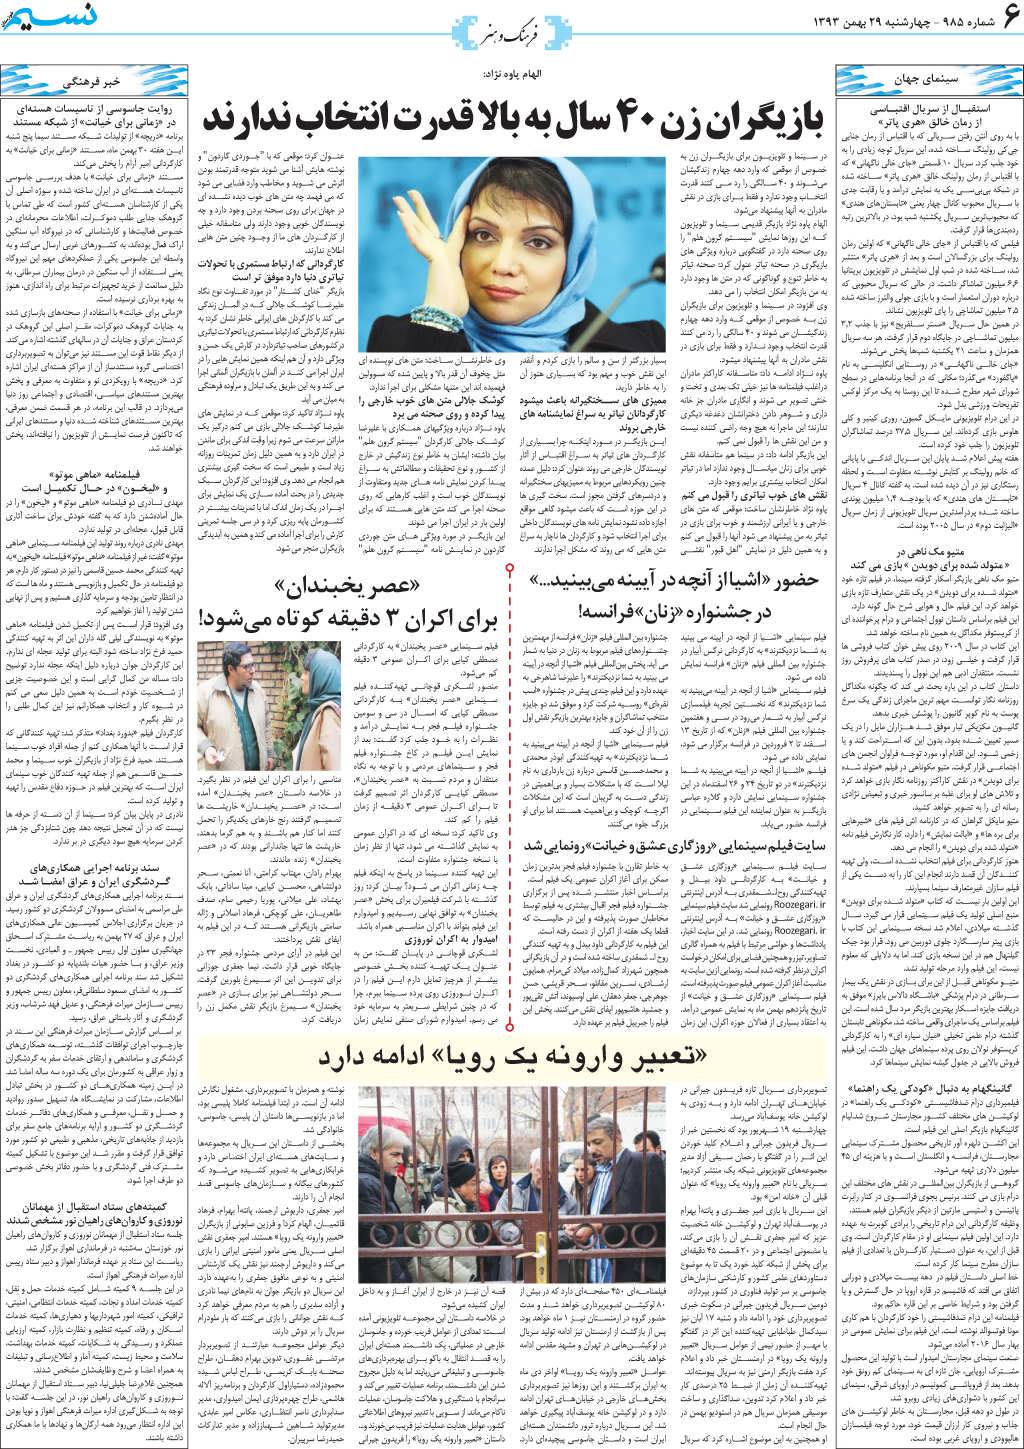 صفحه فرهنگ و هنر روزنامه نسیم شماره 985